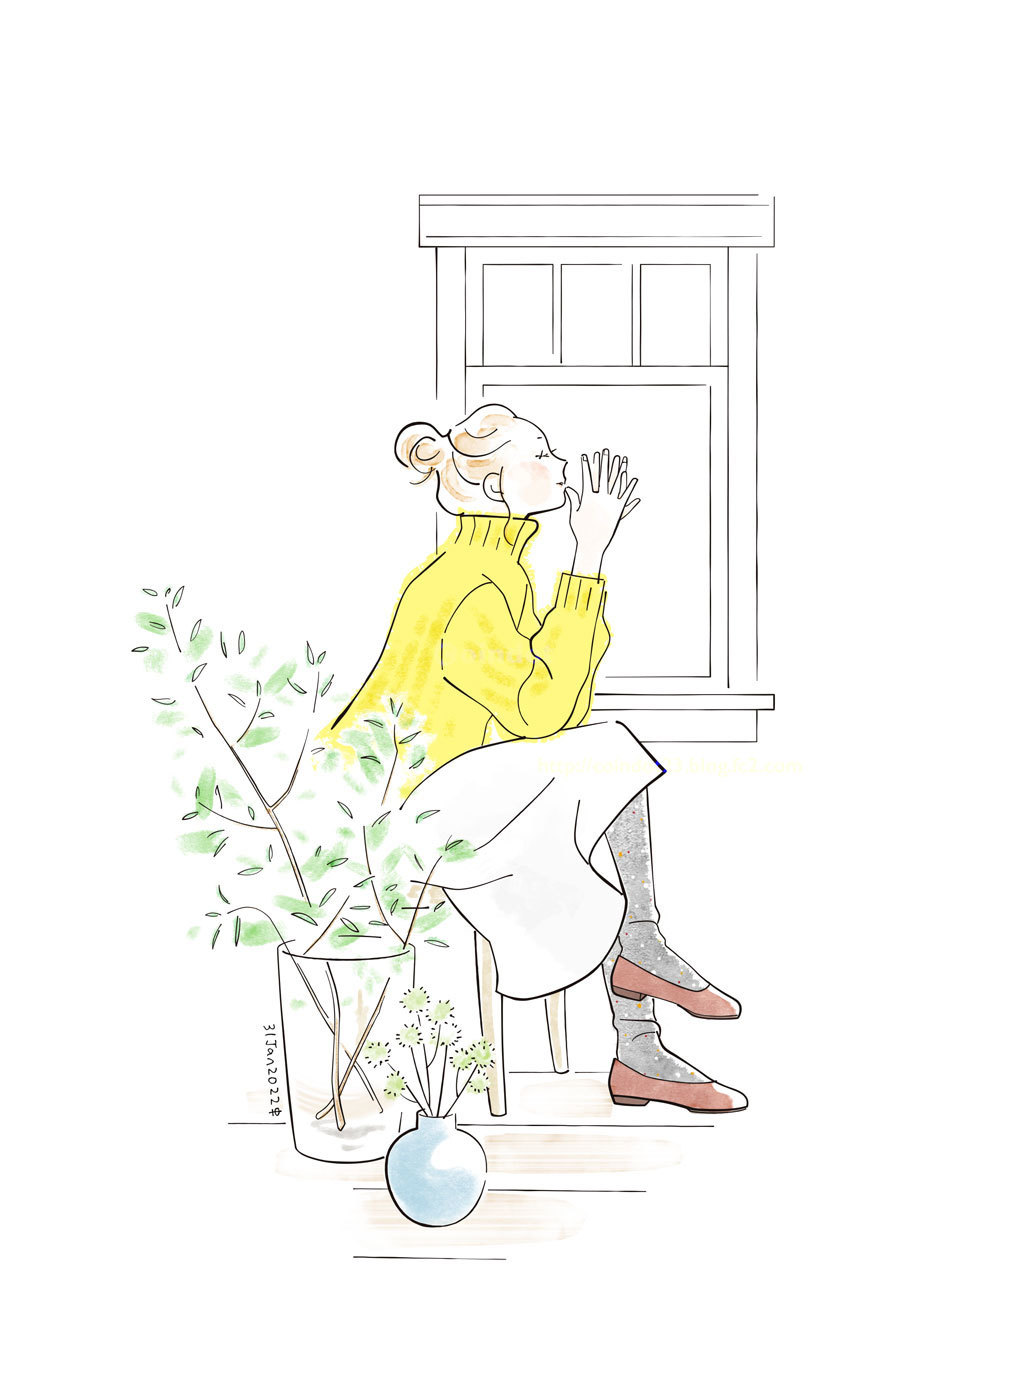 水彩風の塗りのデジタルイラスト。室内で女の子が椅子に座り、顔に軽く手を当てて何かを思い浮かべているようなポーズを横から描いている。女の子の鮮やかな黄色いニットがアクセント。手前に大きな枝を挿した花瓶と小さな花瓶。